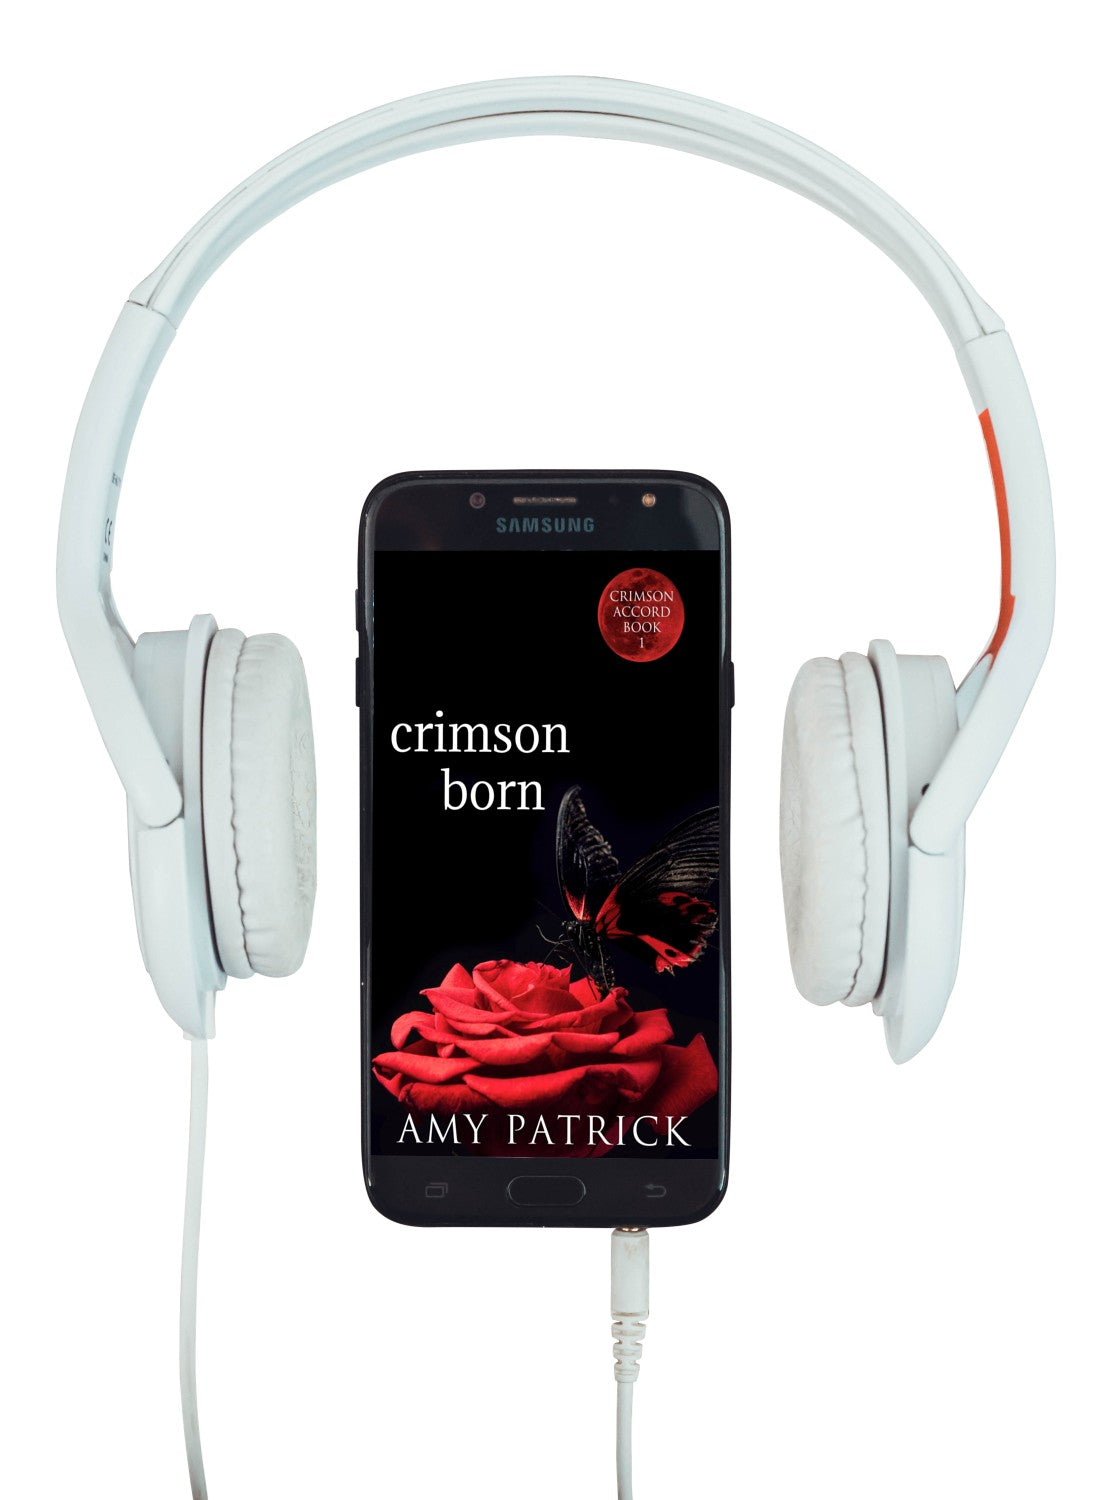 Crimson Born- Book 1 of the Crimson Accord series